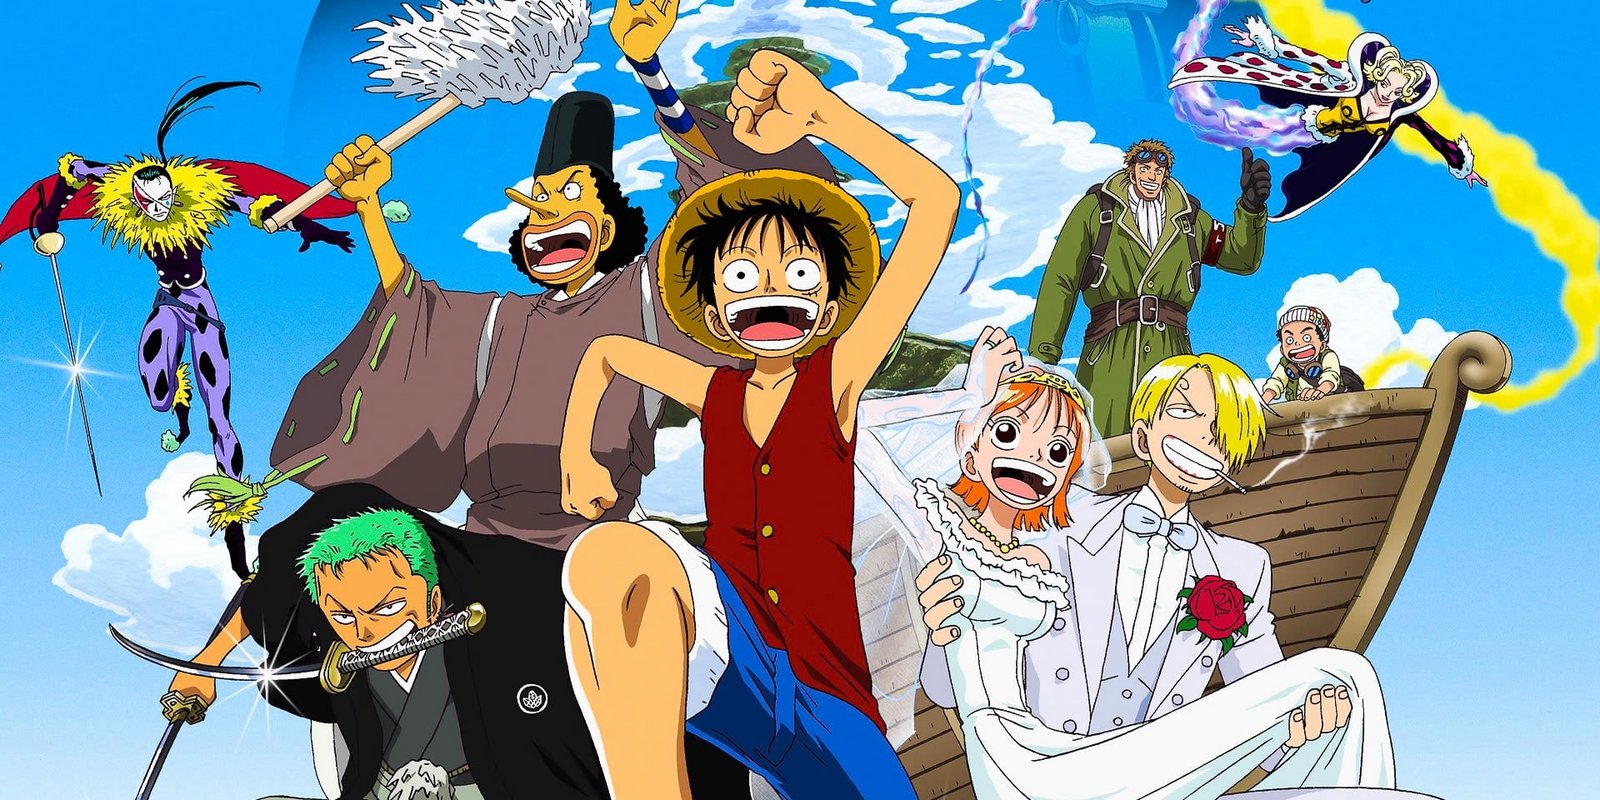 One Piece - 2. Film: Abenteuer auf der Spiralinsel